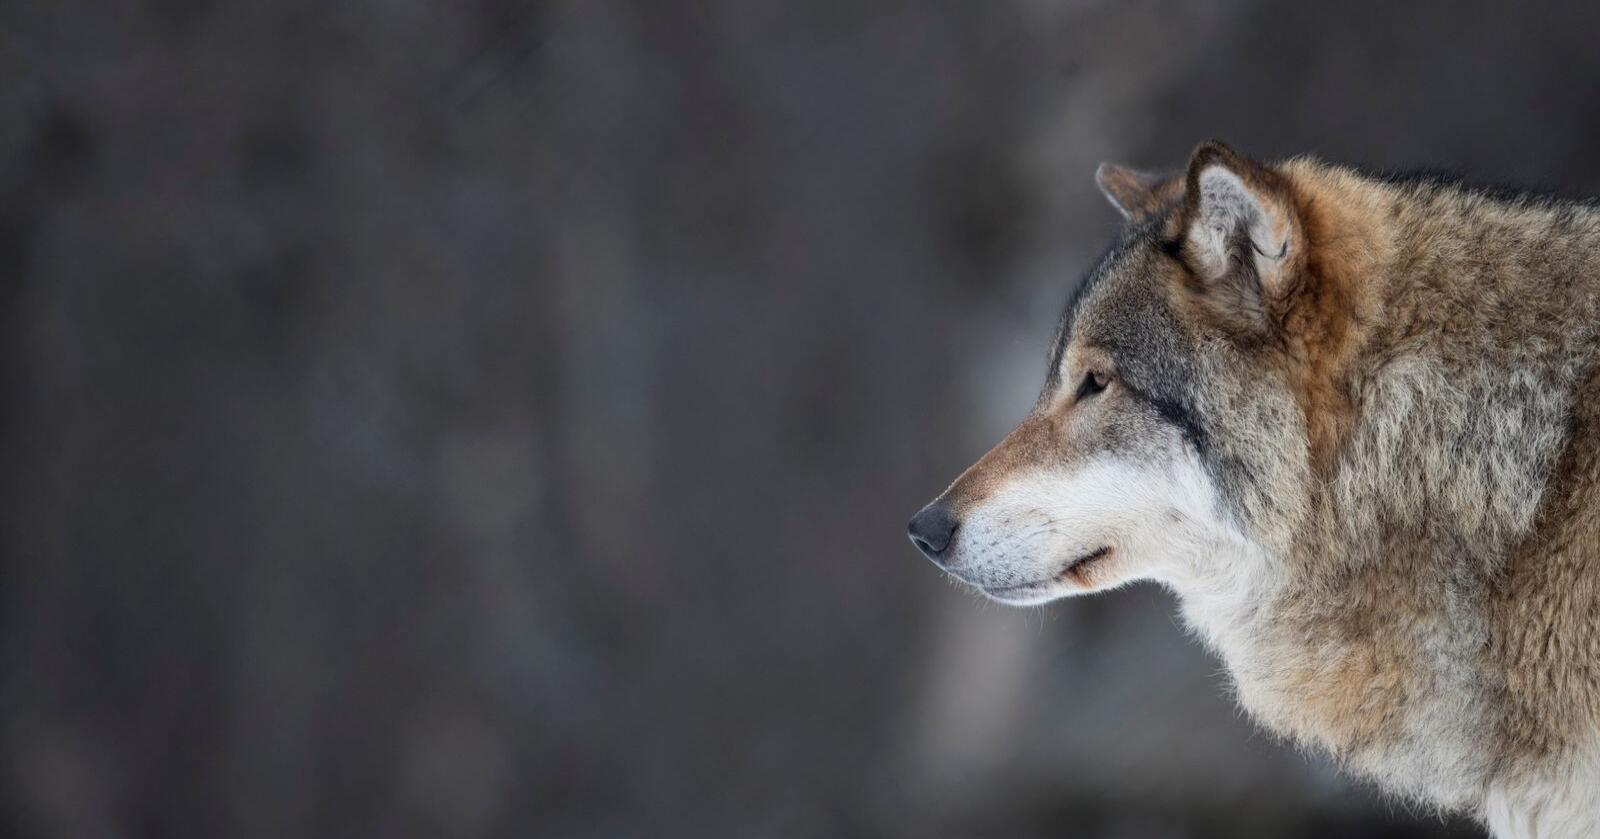 Den svenske ulvebestanden skal ned. For å lykkes med det, mener den svenske regjeringen at 100 ulver bør felles i Sverige i vinter. 
Foto: Heiko Junge / NTB